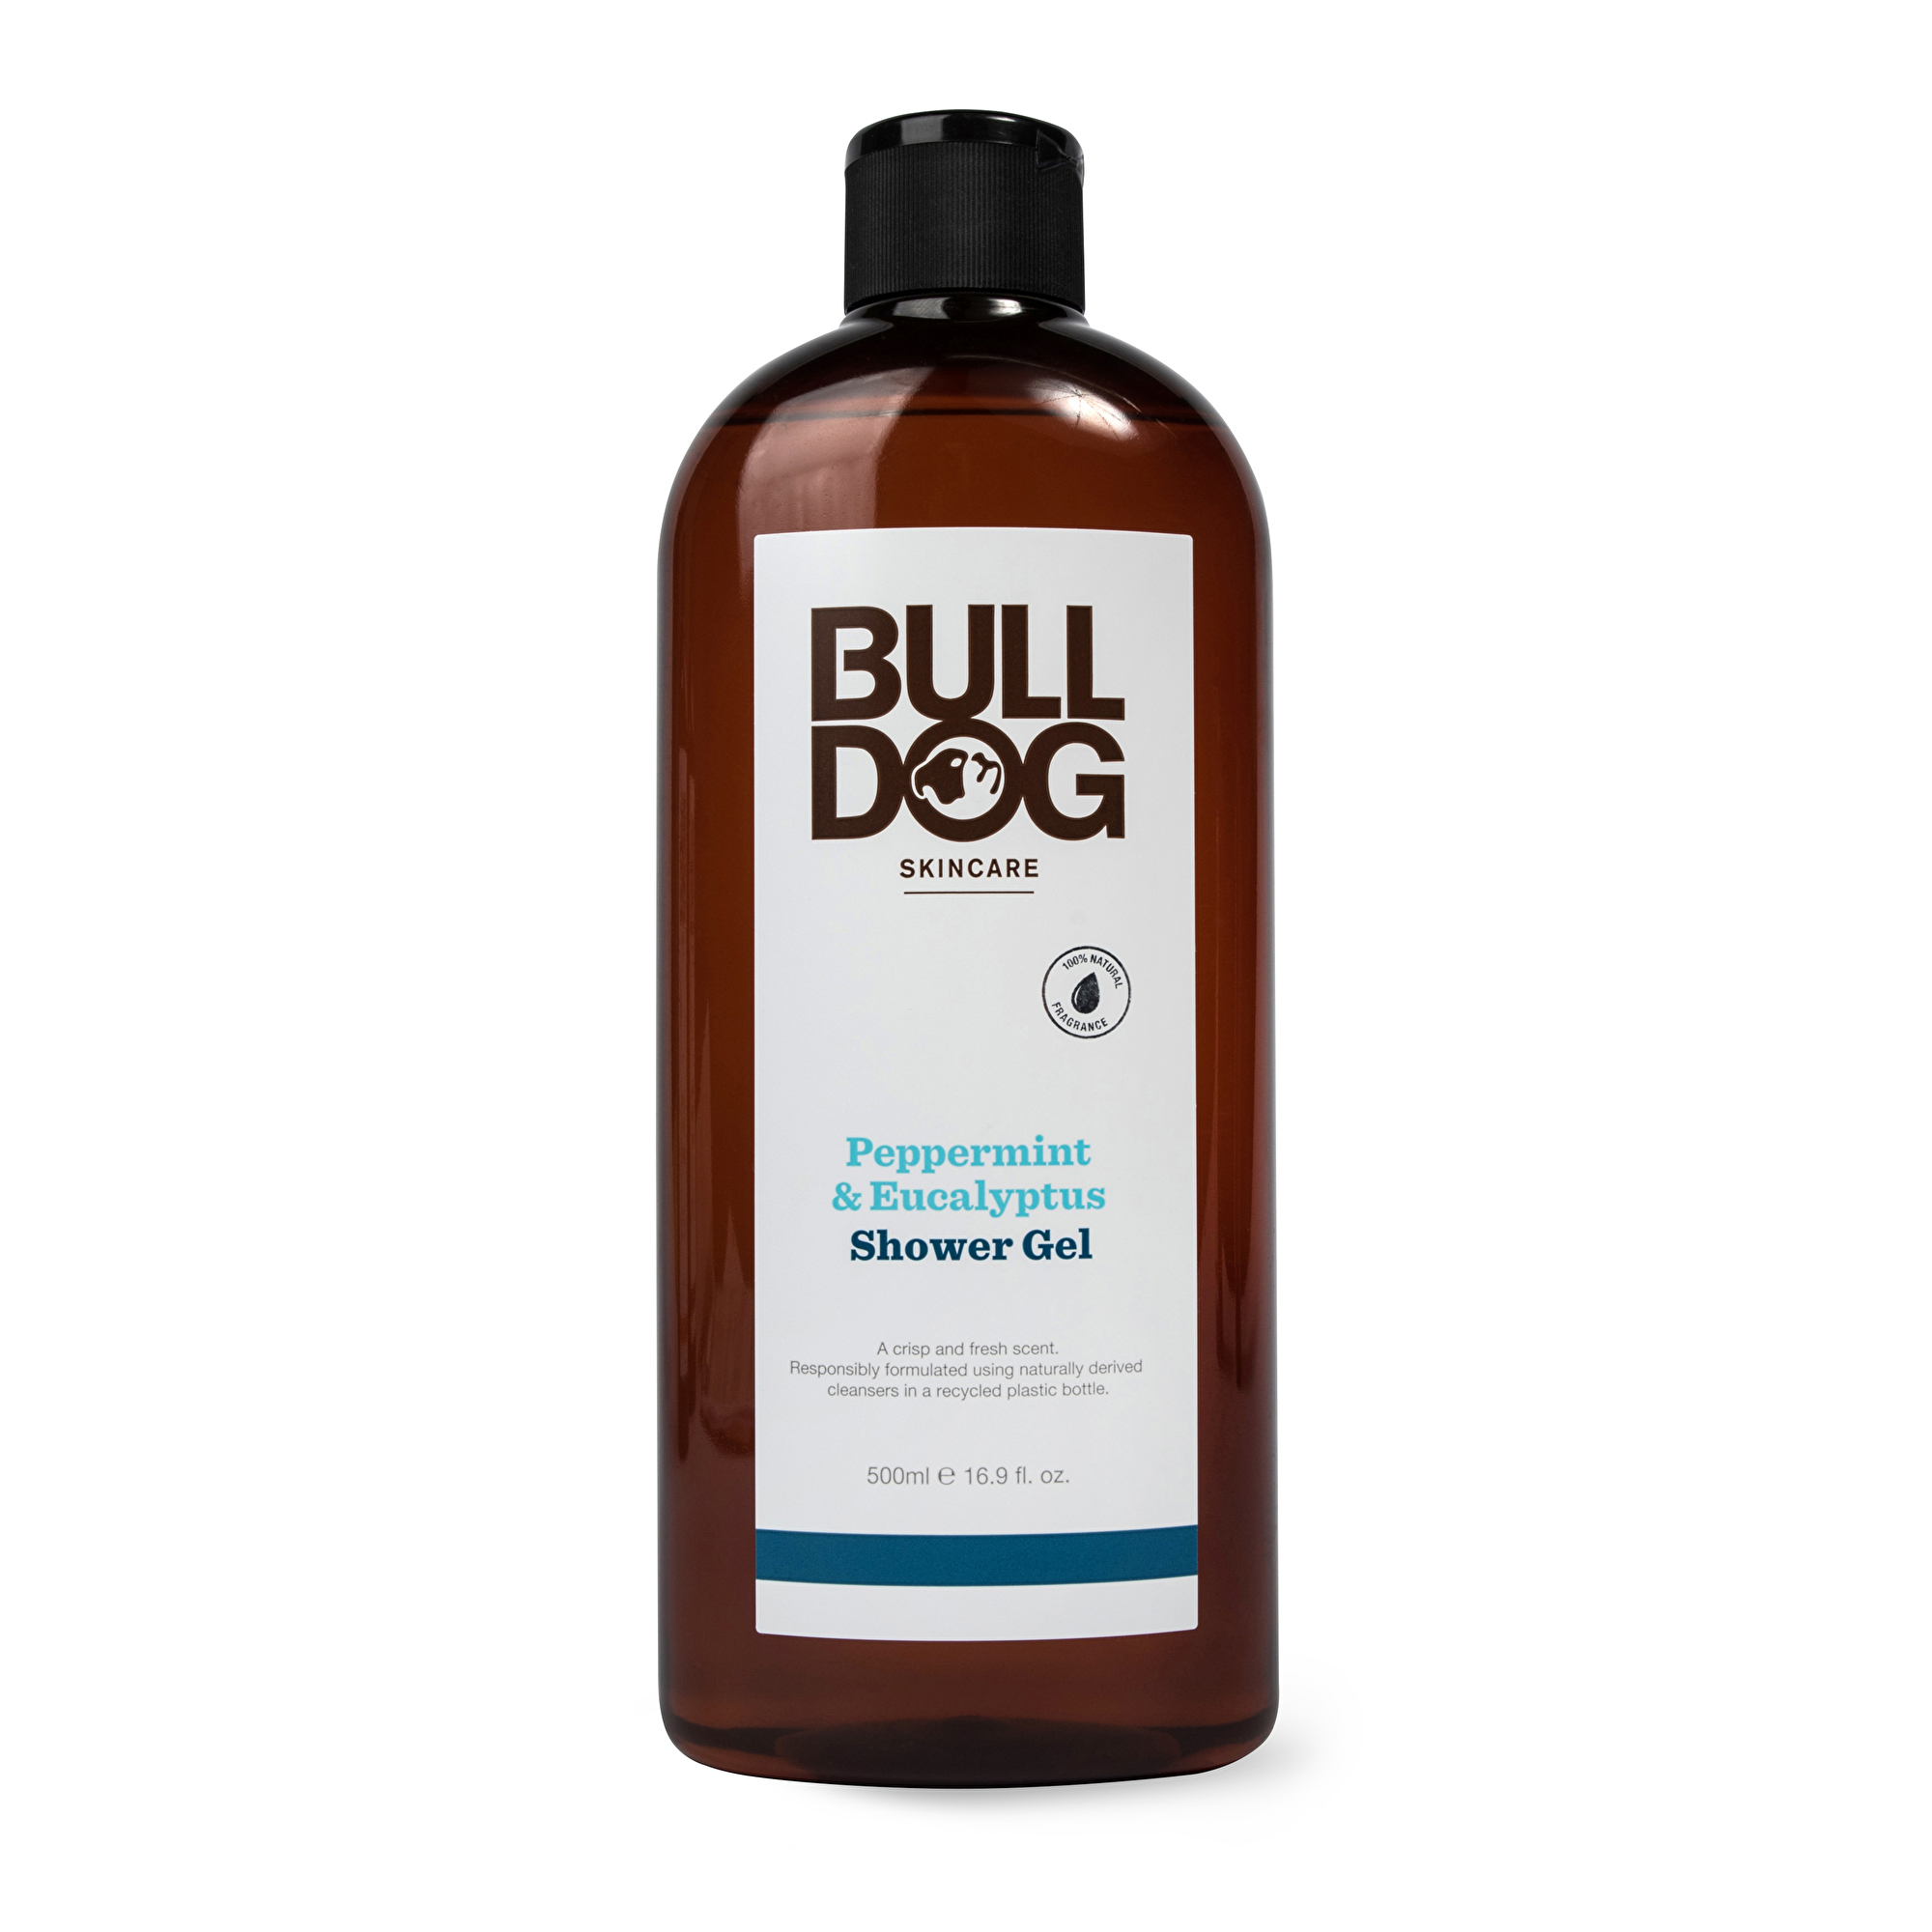 Bulldog Sprchový gel Peppermint & Eucalyptus (Shower Gel) 500 ml